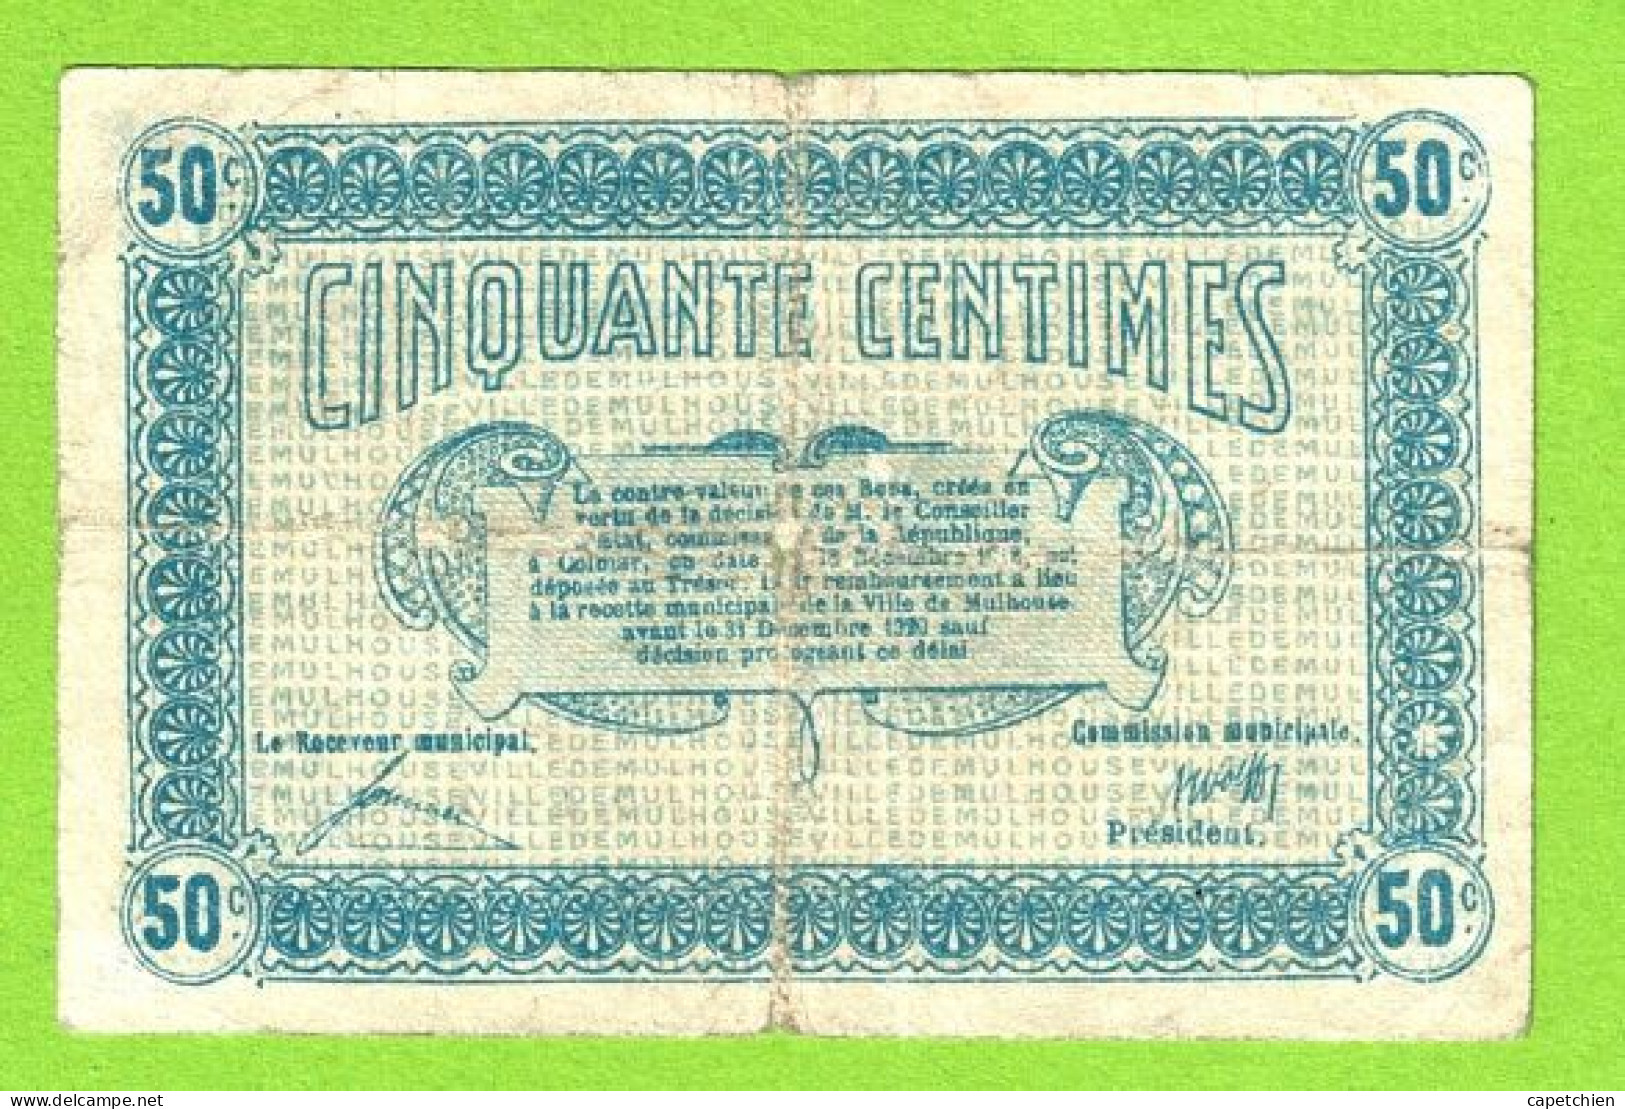 FRANCE / MULHOUSE / 50 CENTIMES / 28 DECEMBRE 1918 / N° 75143 - SERIE B - Chambre De Commerce